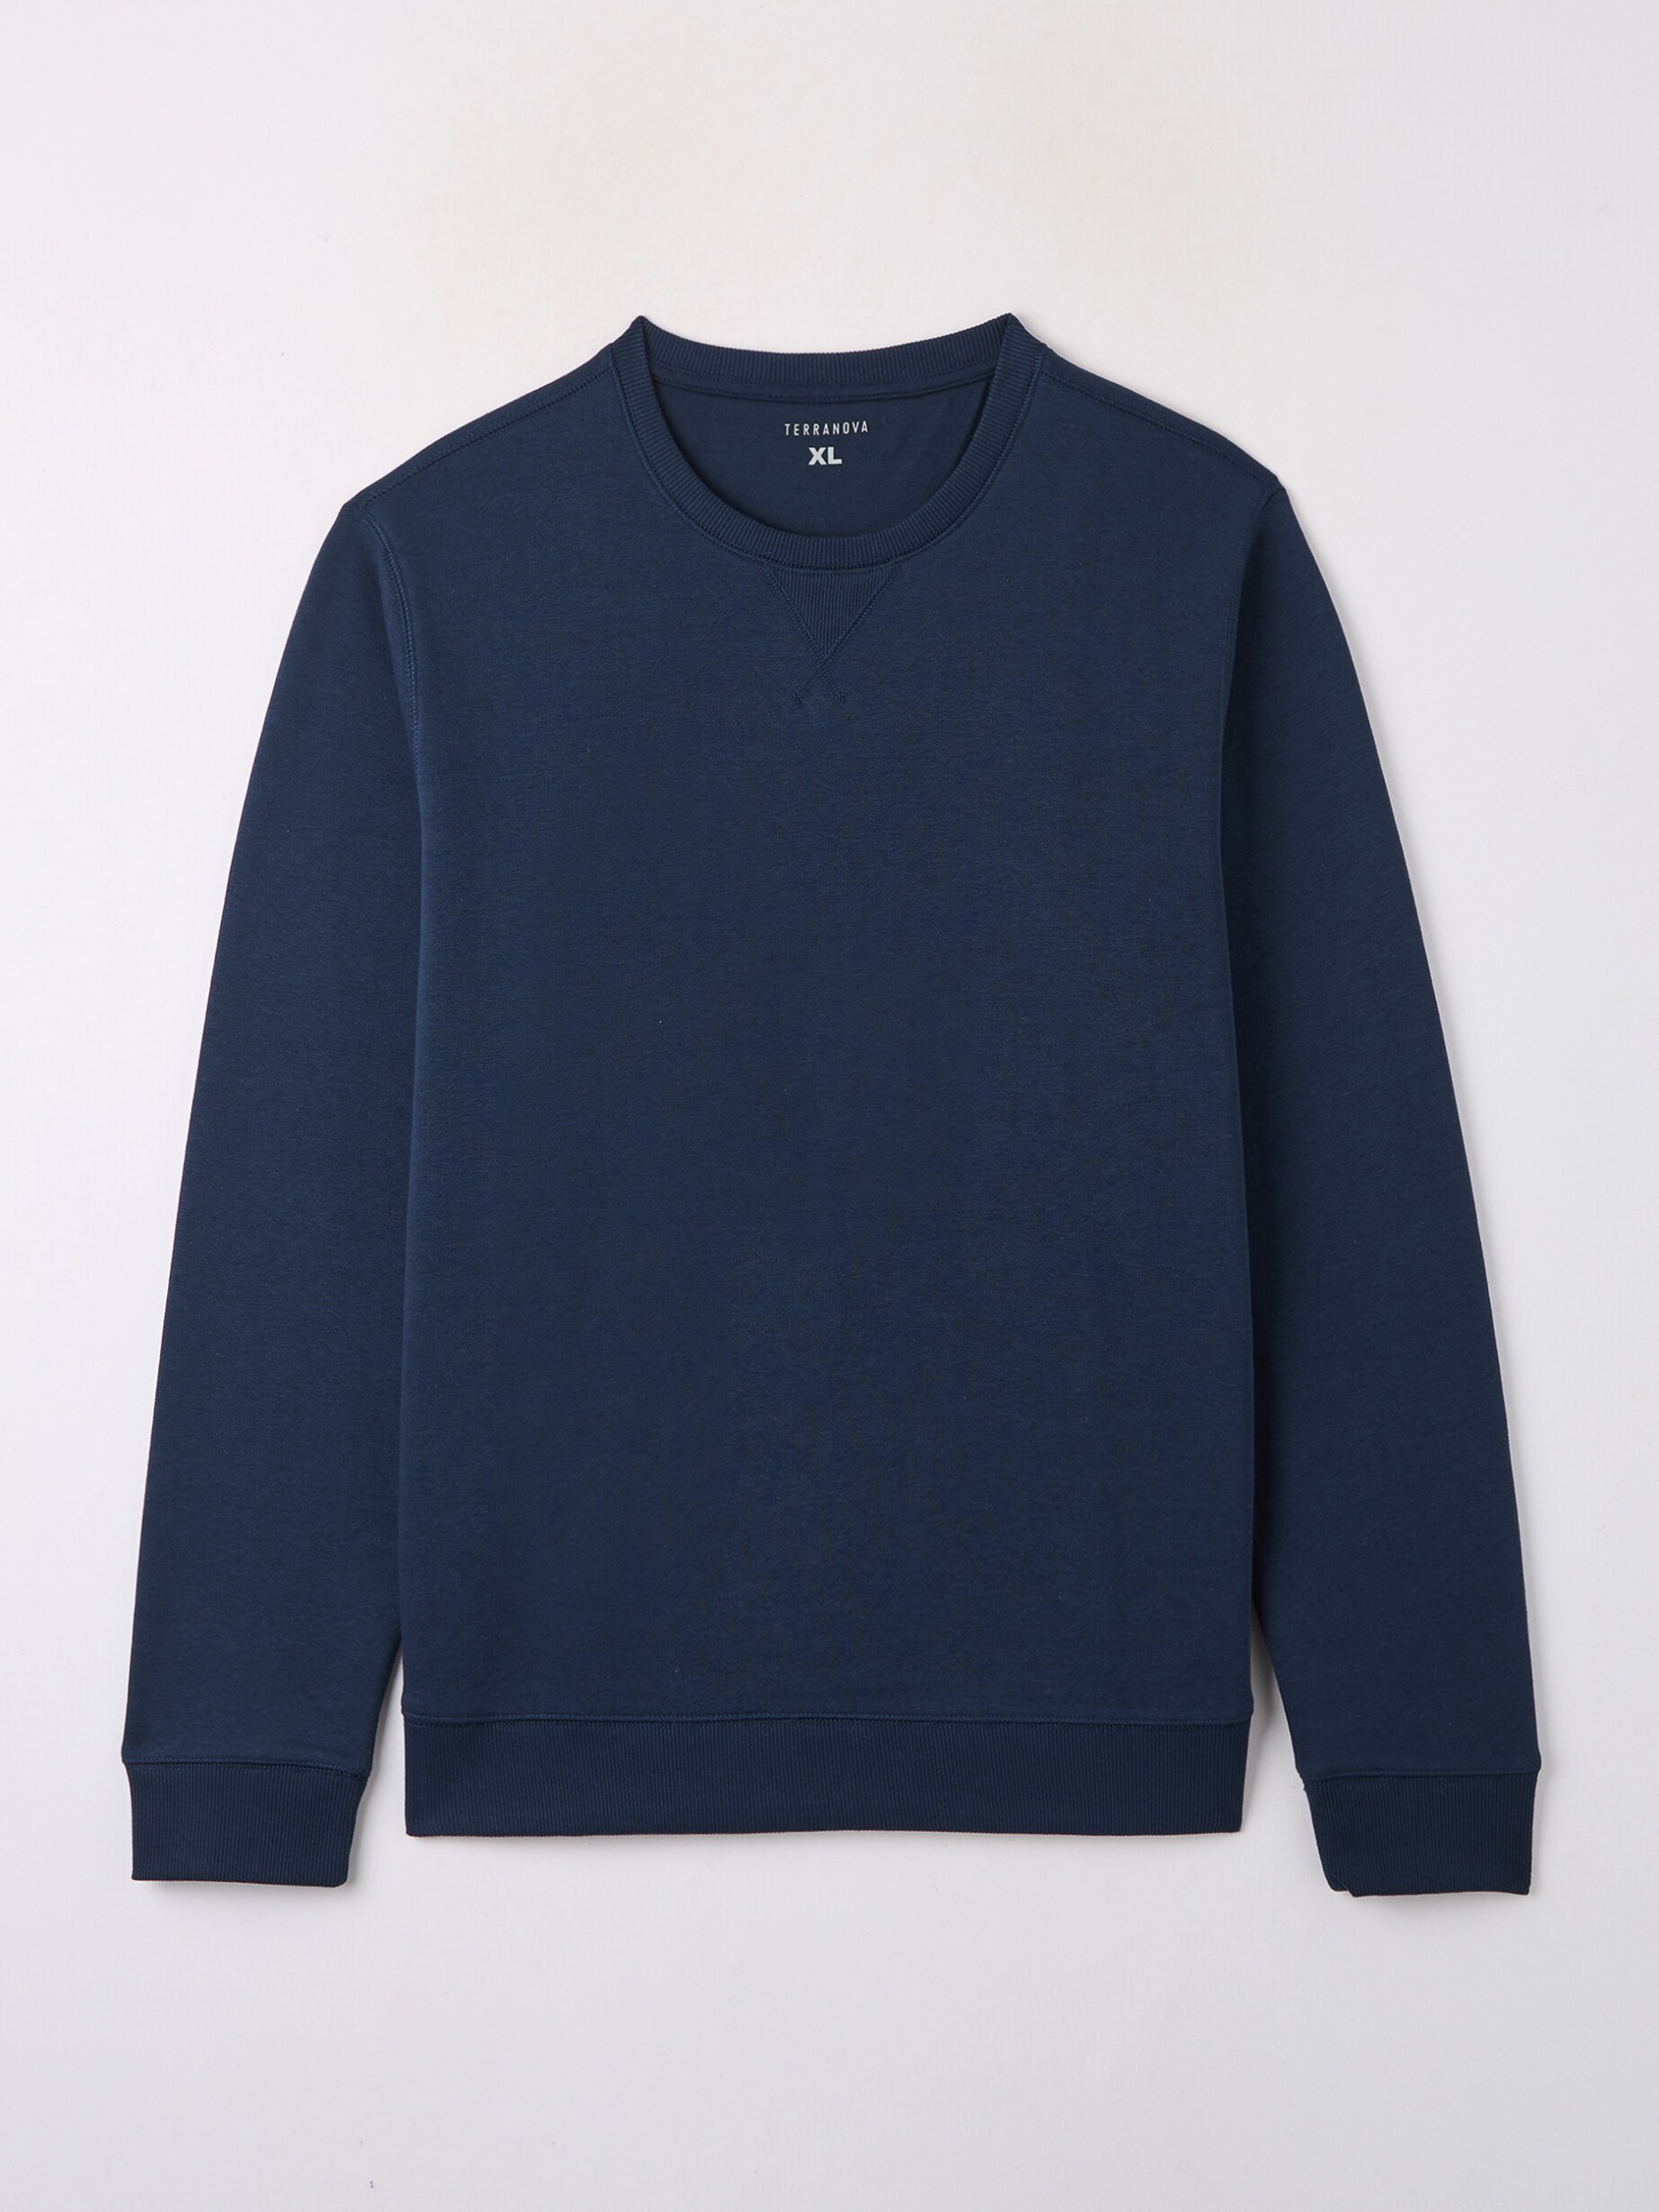 Buy Navy Regular Crew Sweatshirt XL